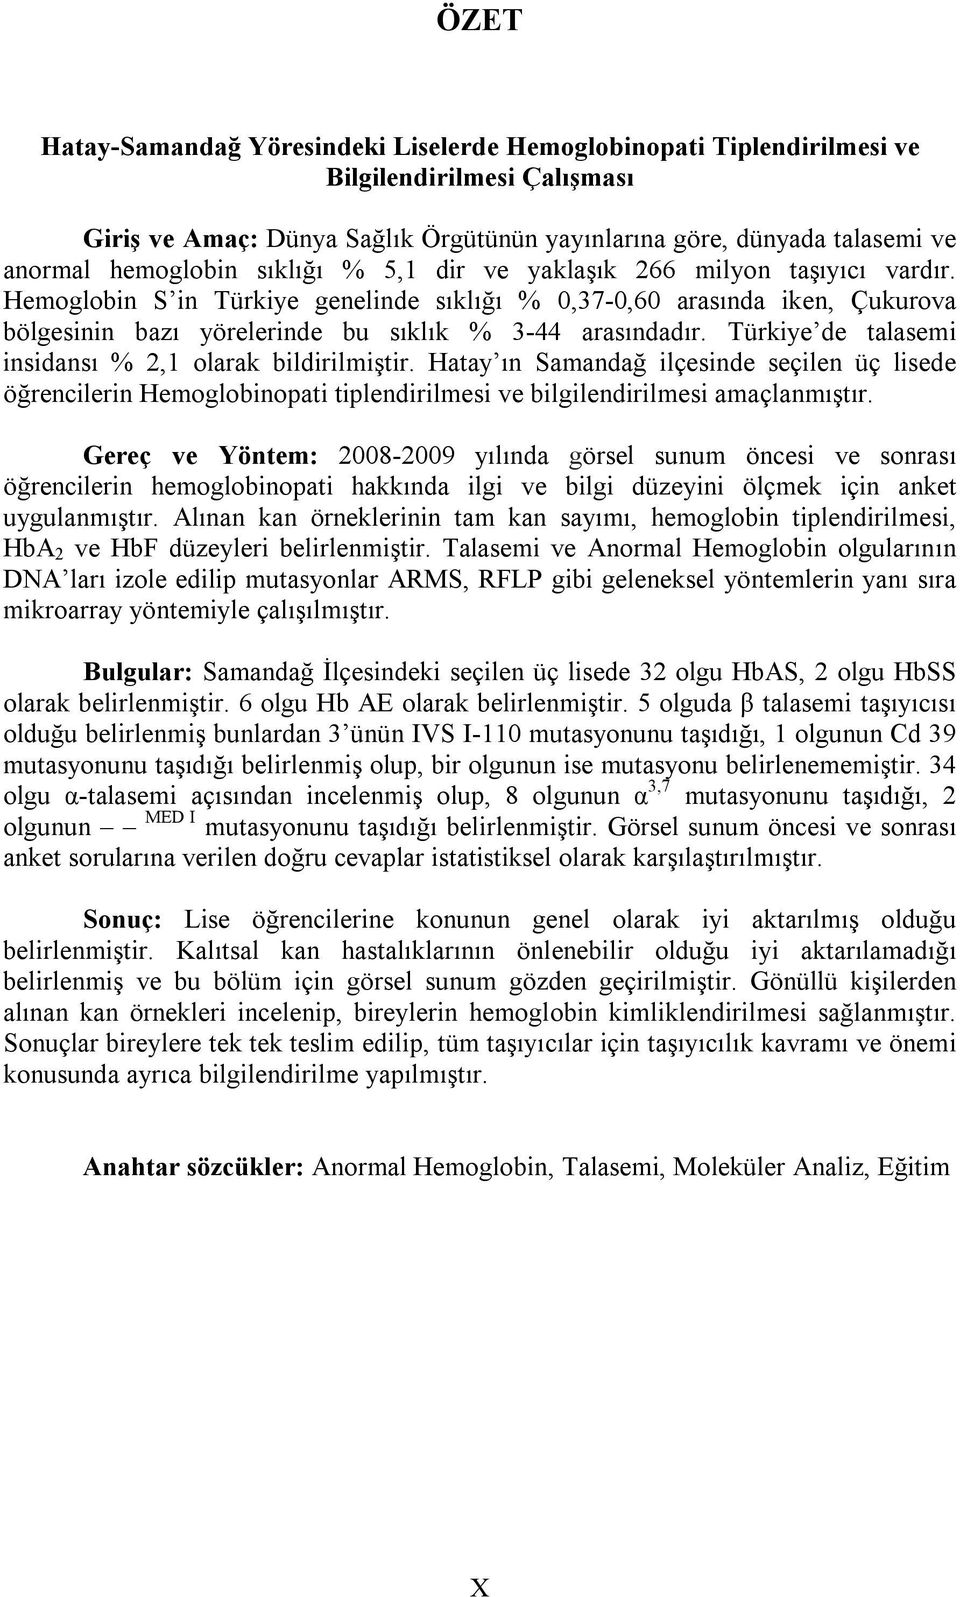 Türkiye de talasemi insidansı % 2,1 olarak bildirilmiştir. Hatay ın Samandağ ilçesinde seçilen üç lisede öğrencilerin Hemoglobinopati tiplendirilmesi ve bilgilendirilmesi amaçlanmıştır.